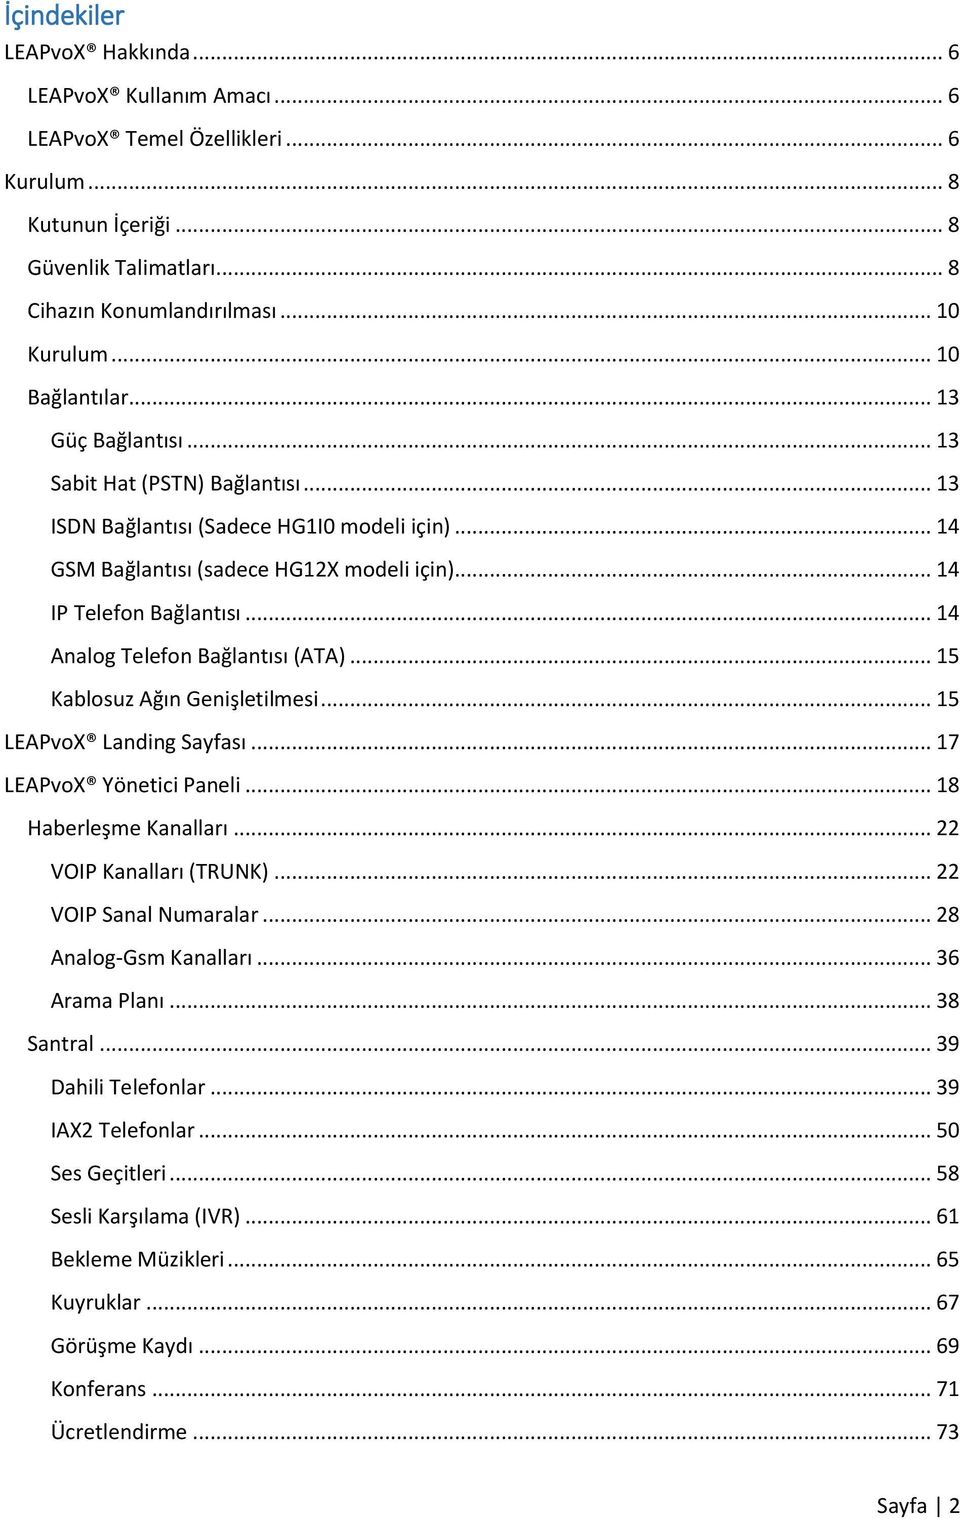 .. 14 Analog Telefon Bağlantısı (ATA)... 15 Kablosuz Ağın Genişletilmesi... 15 LEAPvoX Landing Sayfası... 17 LEAPvoX Yönetici Paneli... 18 Haberleşme Kanalları... 22 VOIP Kanalları (TRUNK).